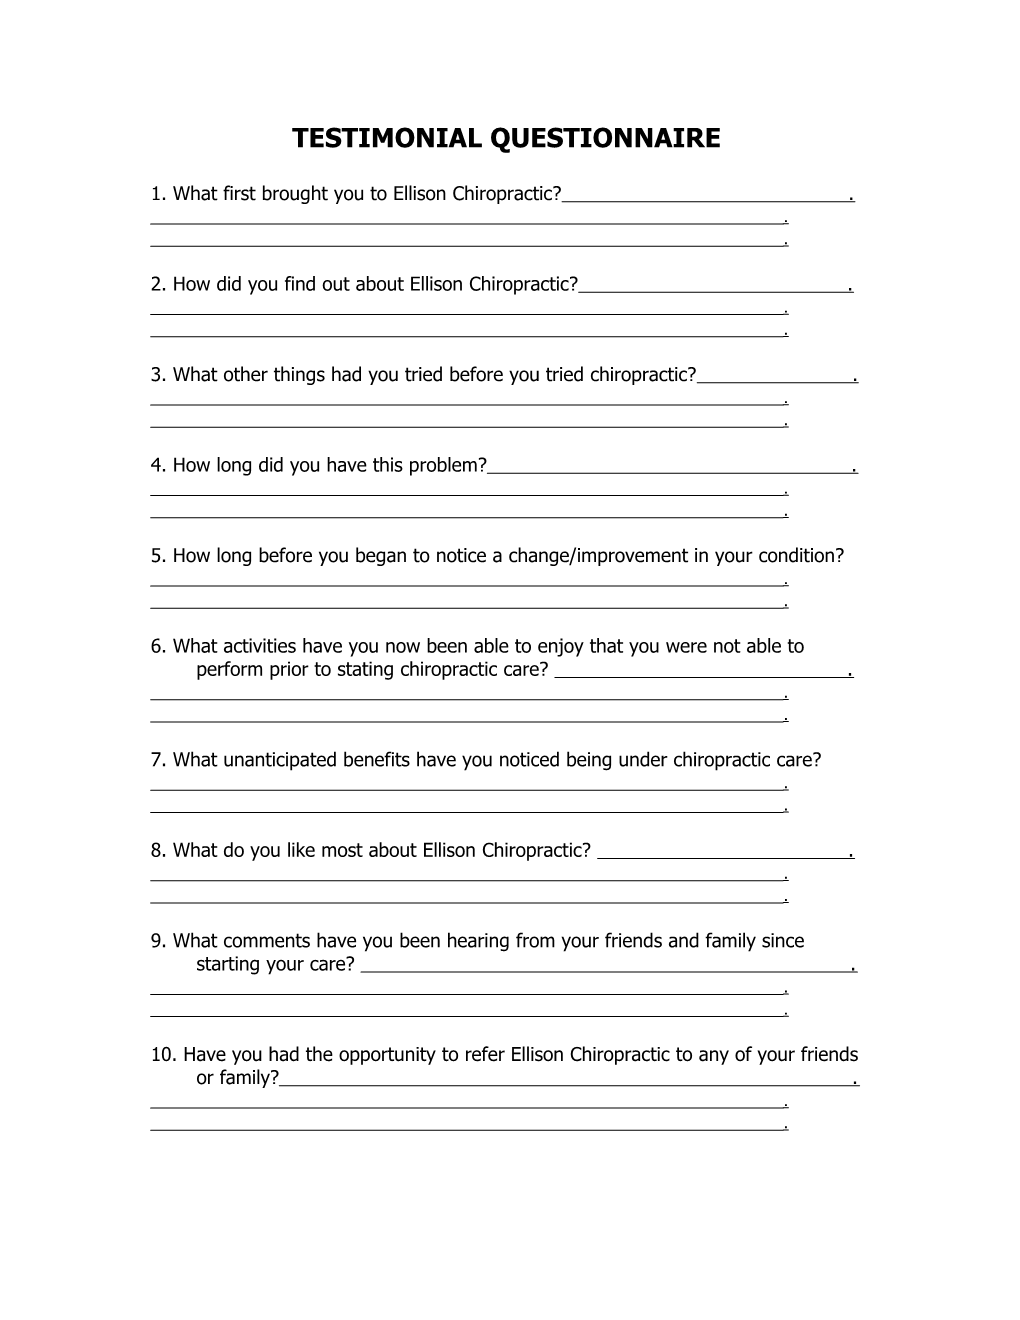 Testimonial Questionnaire